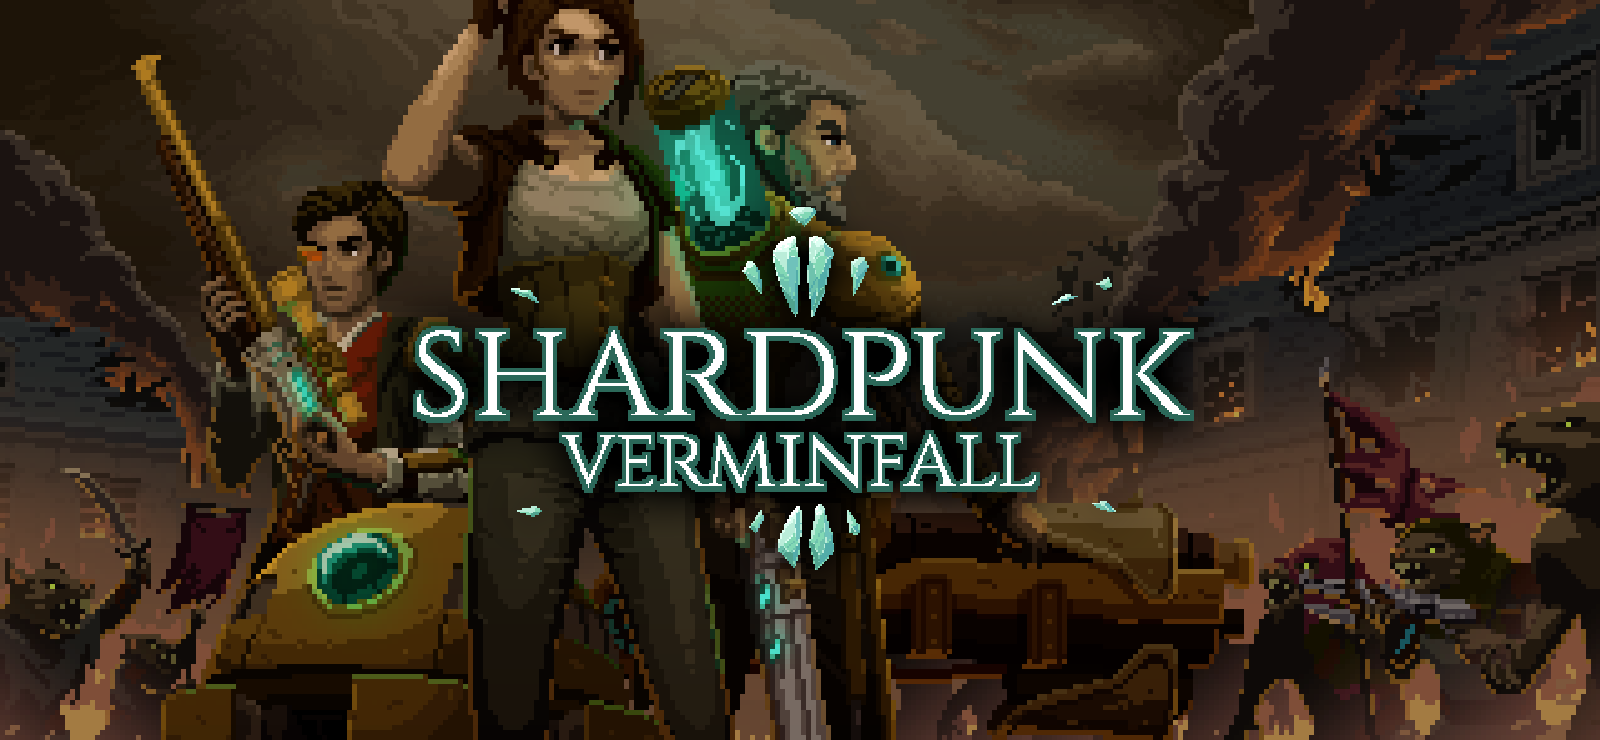 Shardpunk: Verminfall, presto in arrivo su PC 12